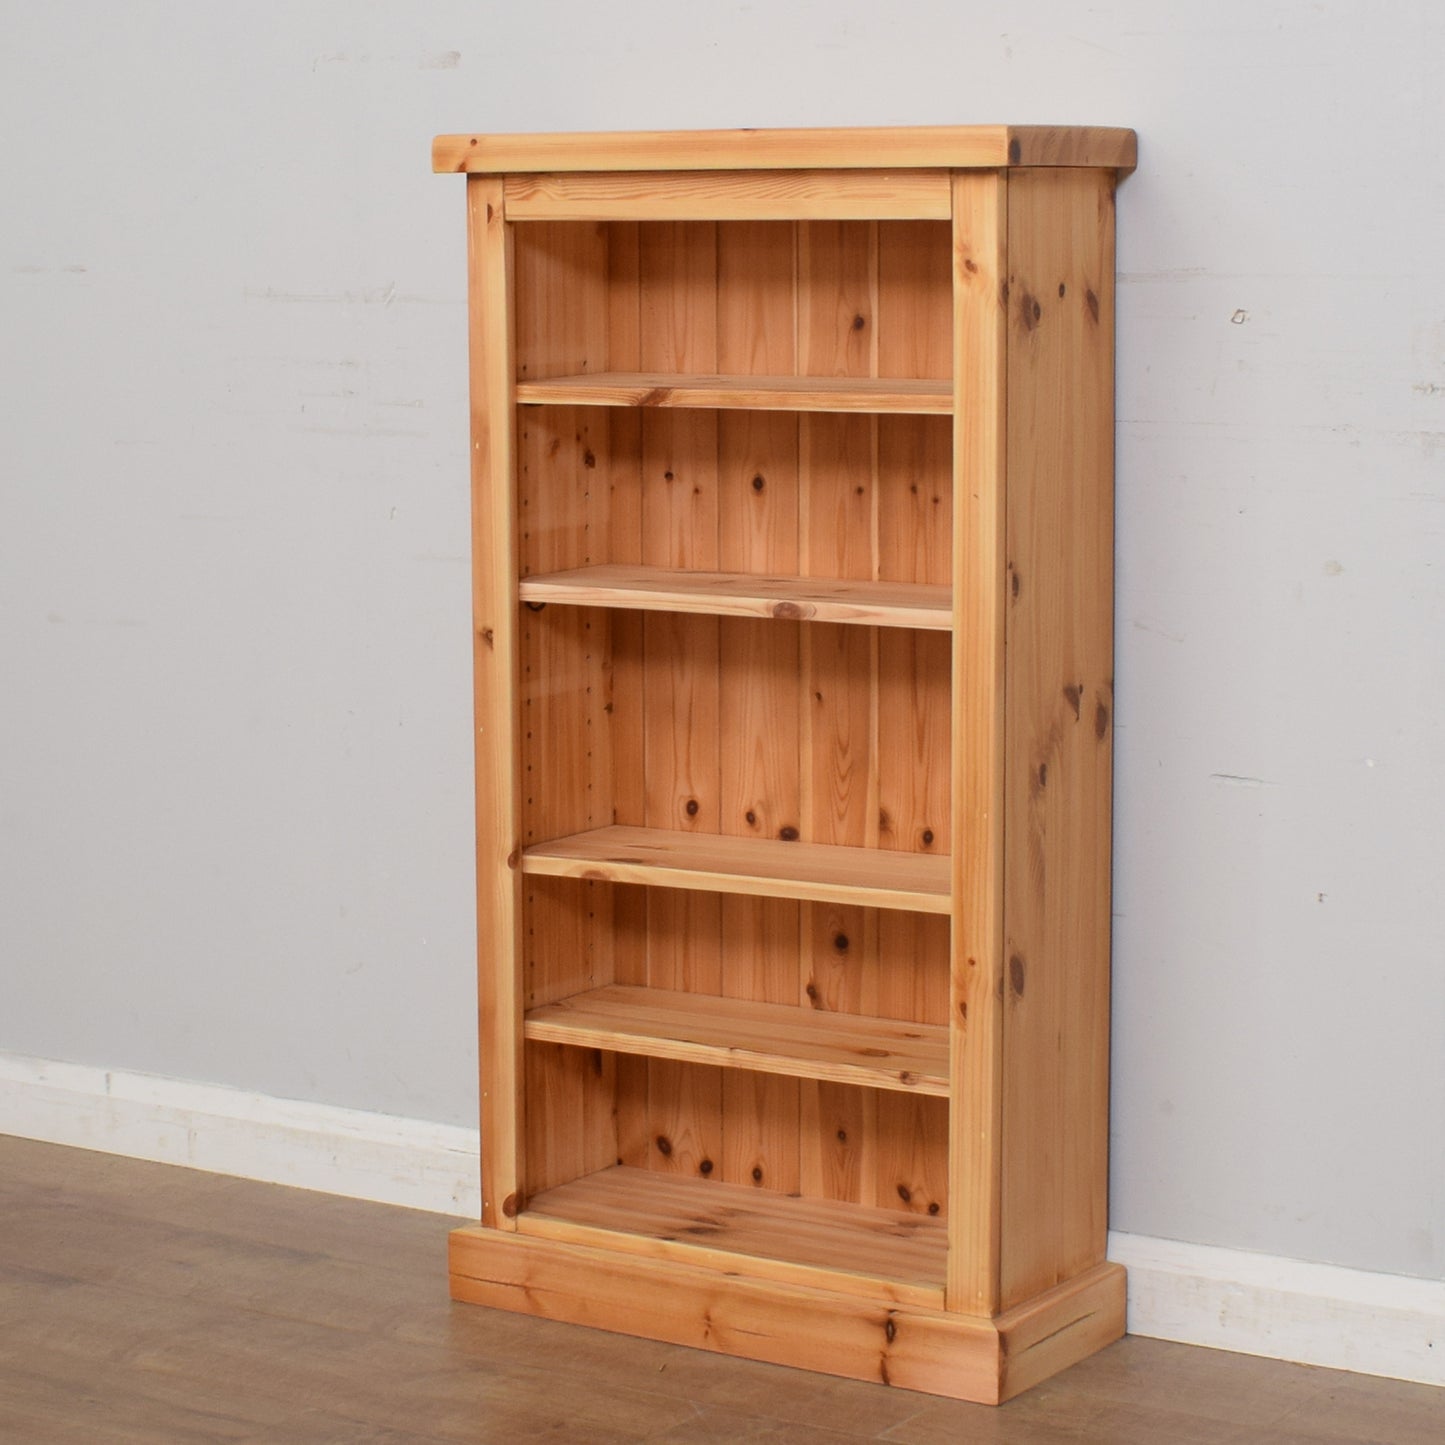 Restored Small Pine Bookcase